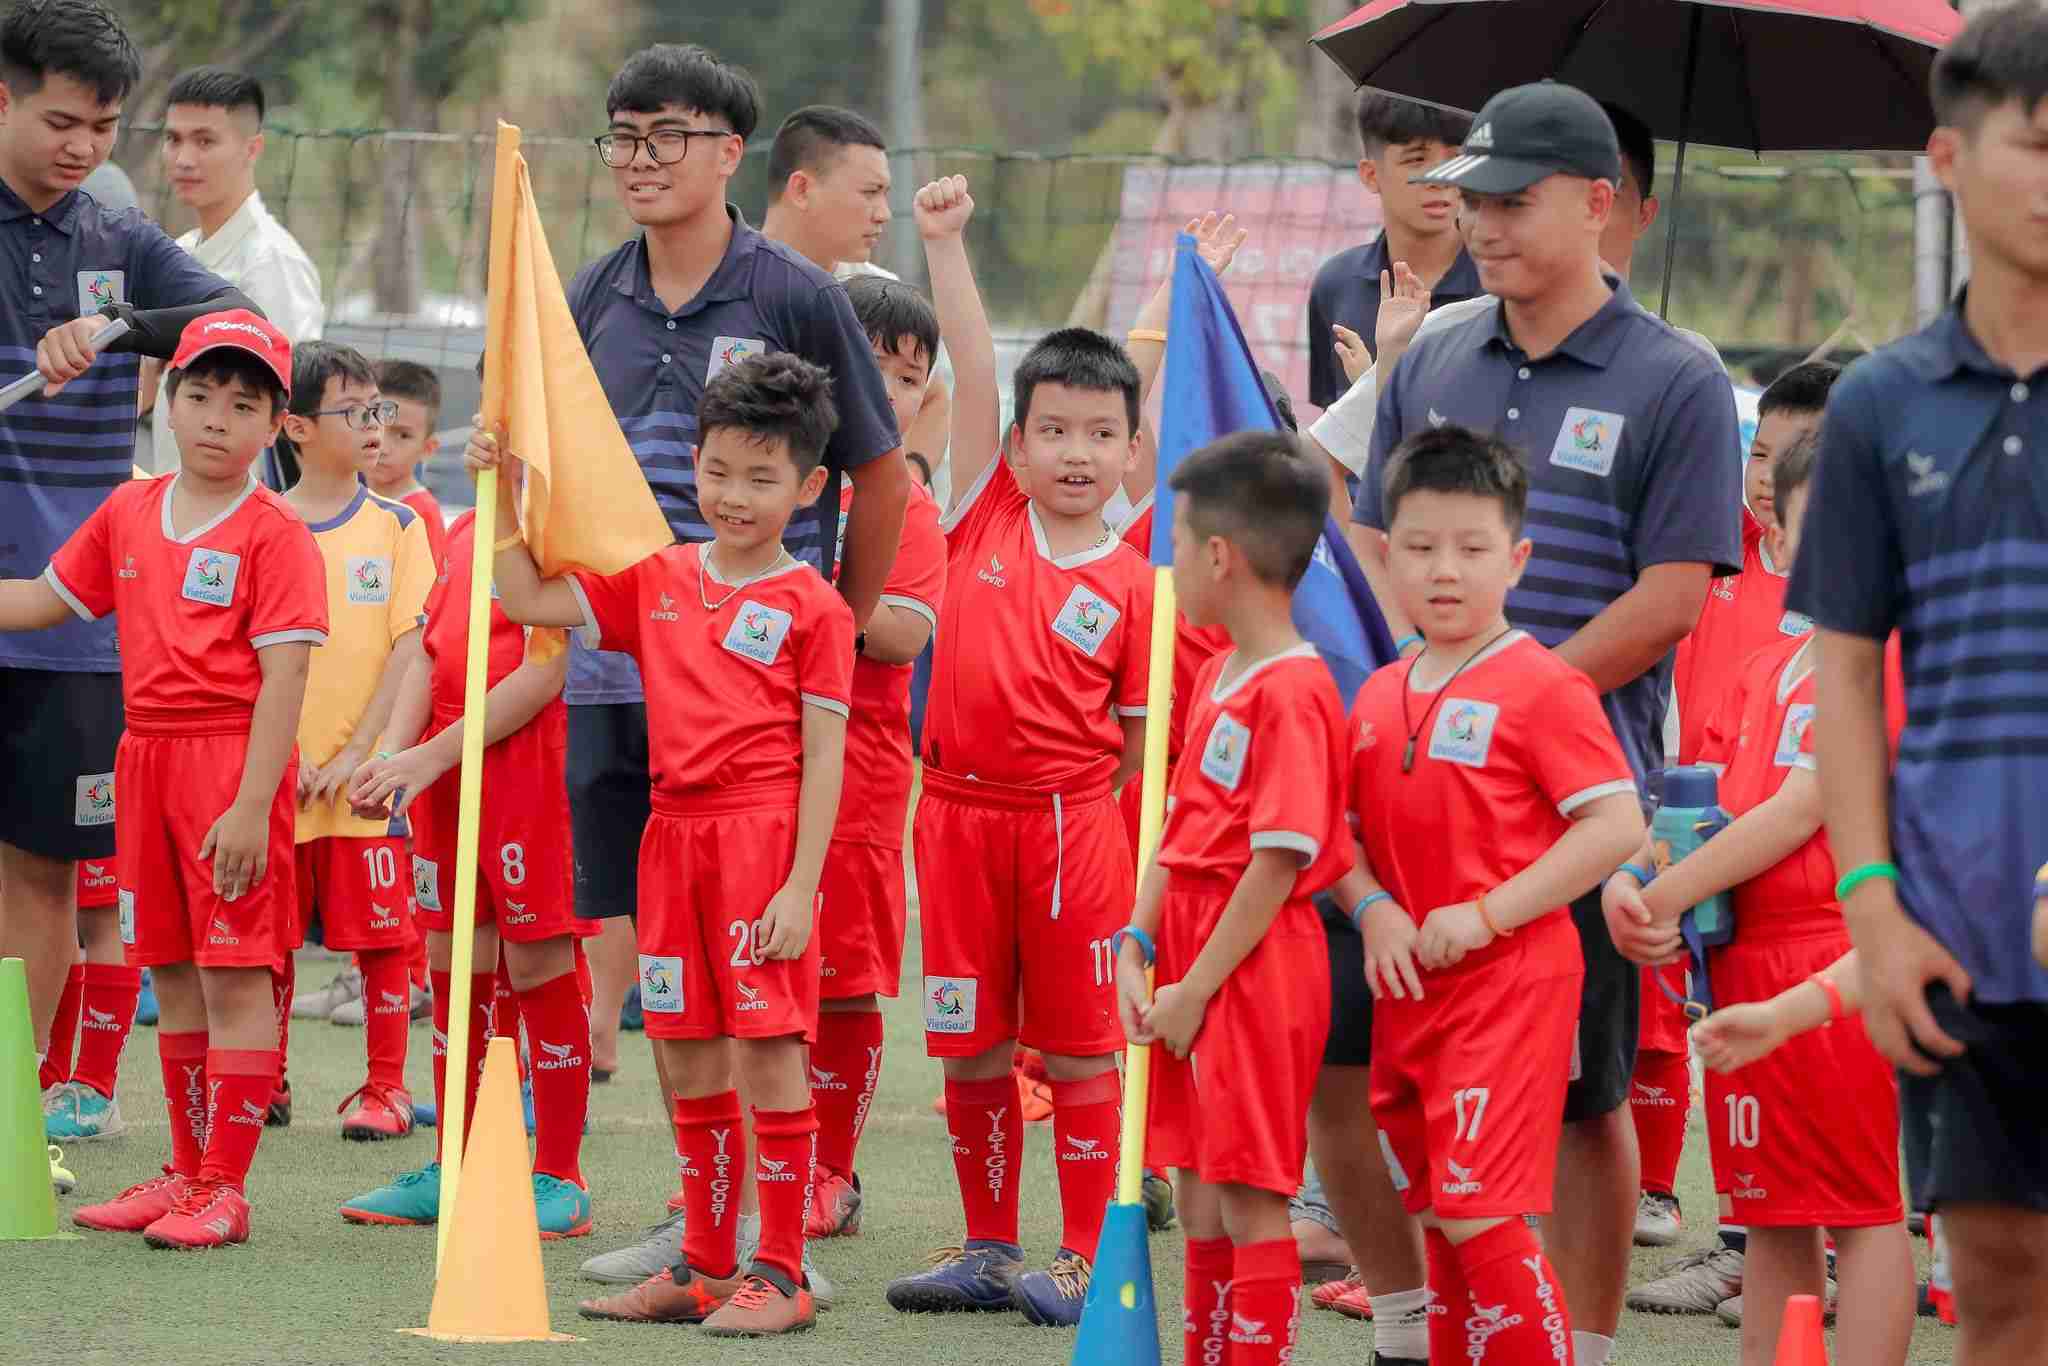 Trung tâm bóng đá VietGoal đang có trên 15.000 trẻ em tham gia học tập, vui chơi. Ảnh: Nguyễn Hải